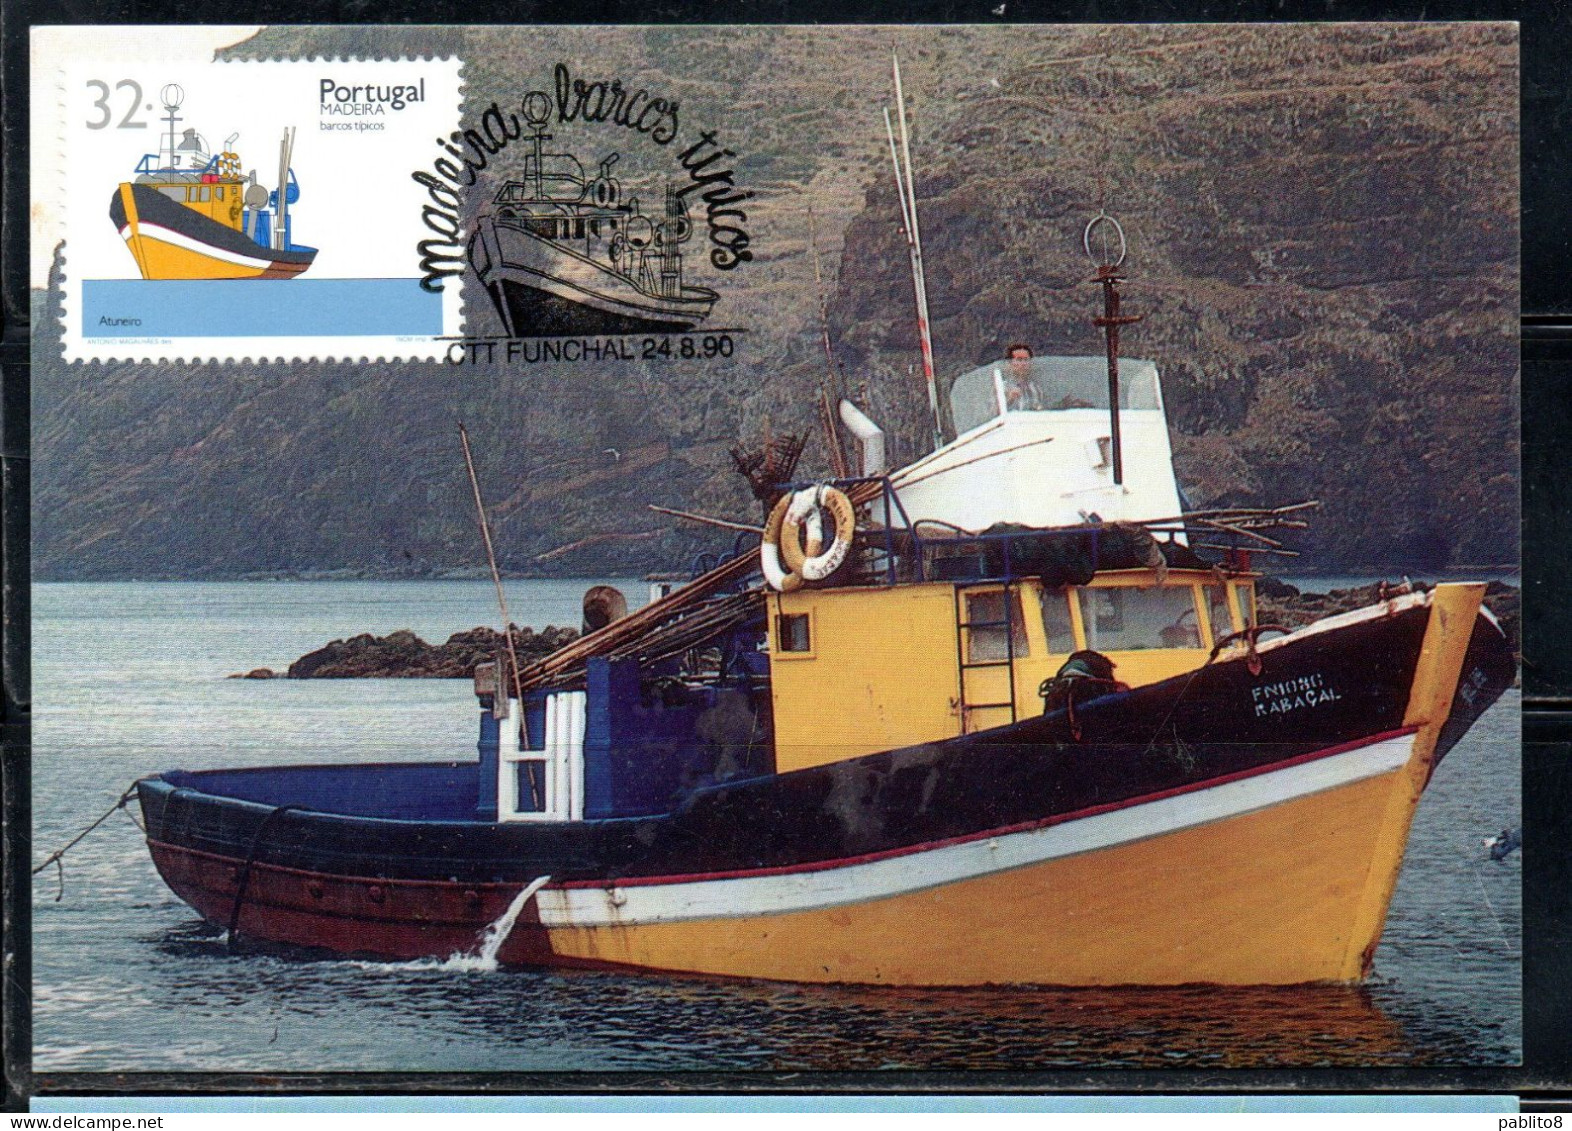 MADERA MADEIRA 1990 BOATS OF TUNA SHIP 32e MAXI MAXIMUM CARD CARTE - Madère